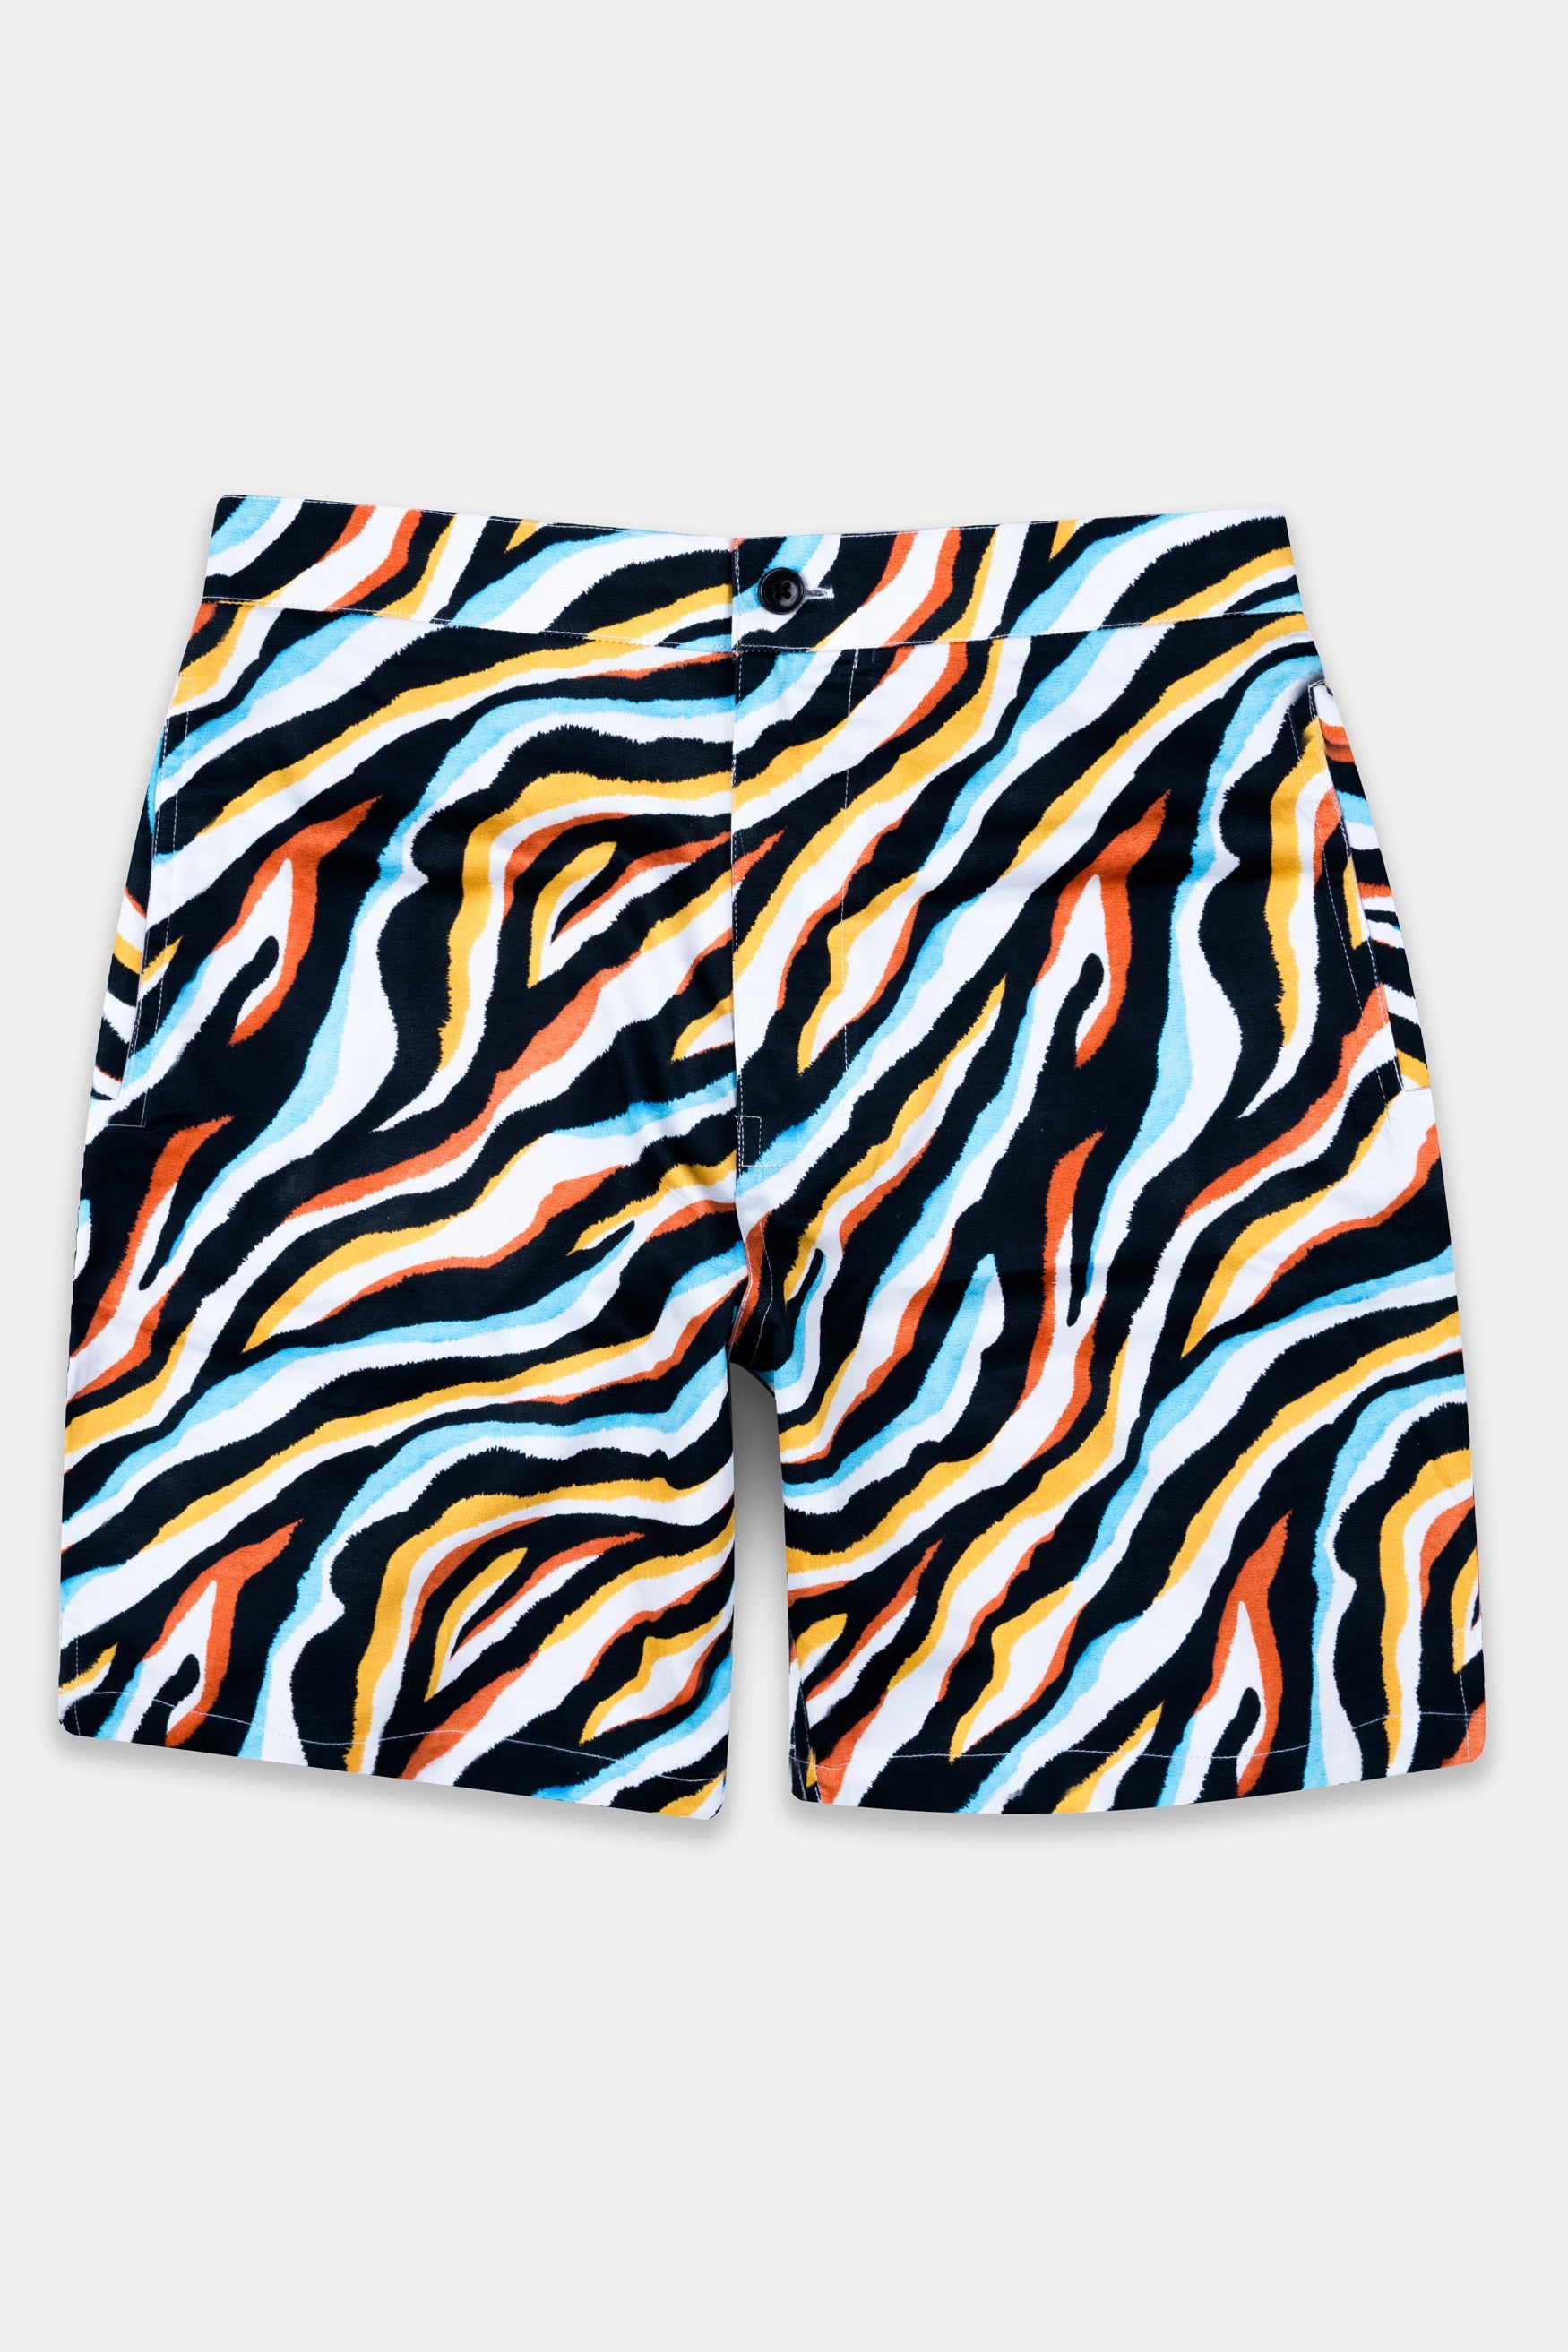 Jade Black and Flame Pea Orange Multicolour Zebra Printed Subtle Sheen Super Soft Premium Cotton Designer Short